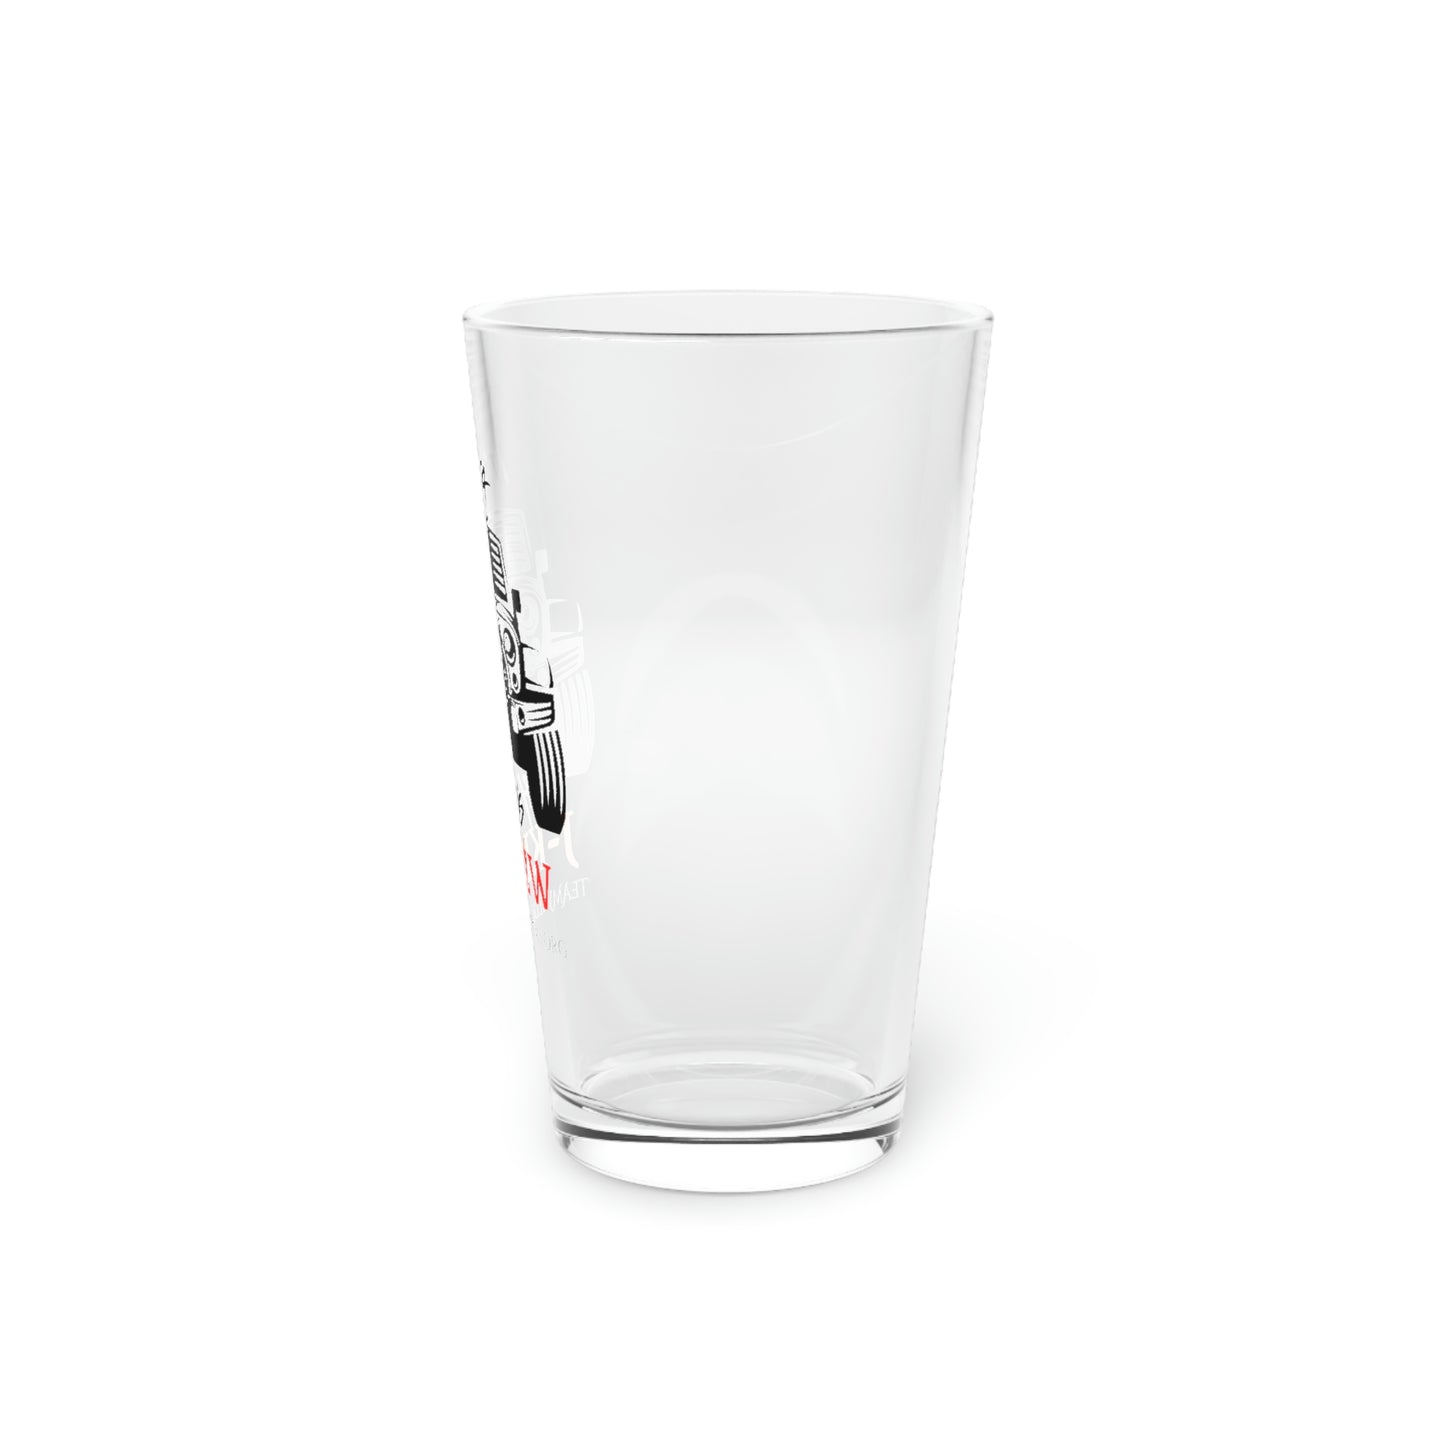 J-Krew™ It's a Thing Pint Glass, 16oz